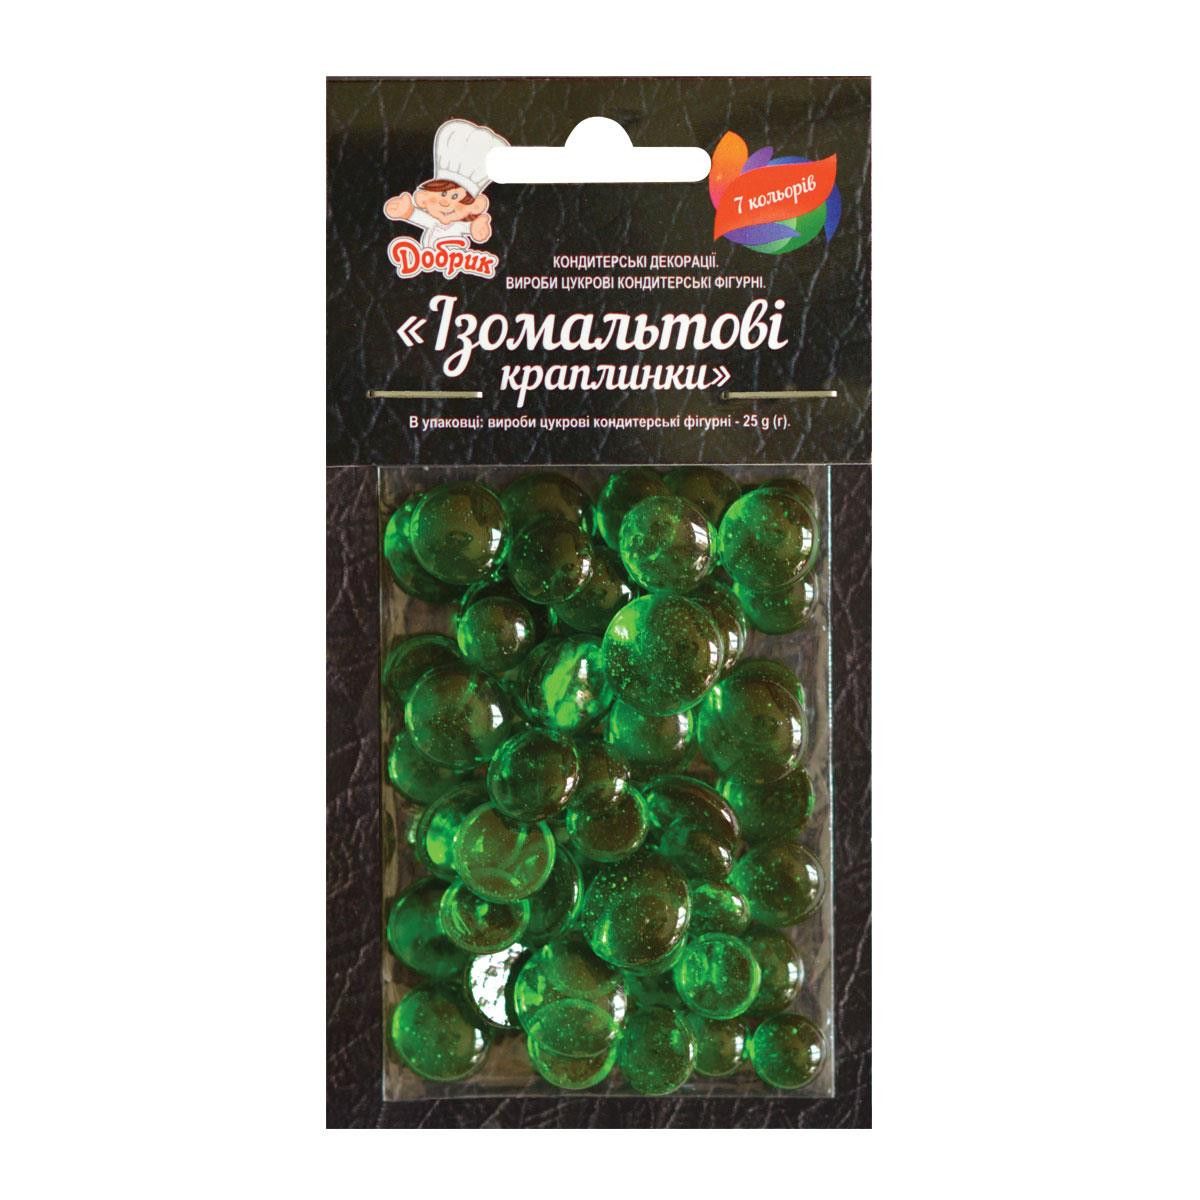 ⋗ Изомальтовые капли зеленые купить в Украине ➛ CakeShop.com.ua, фото